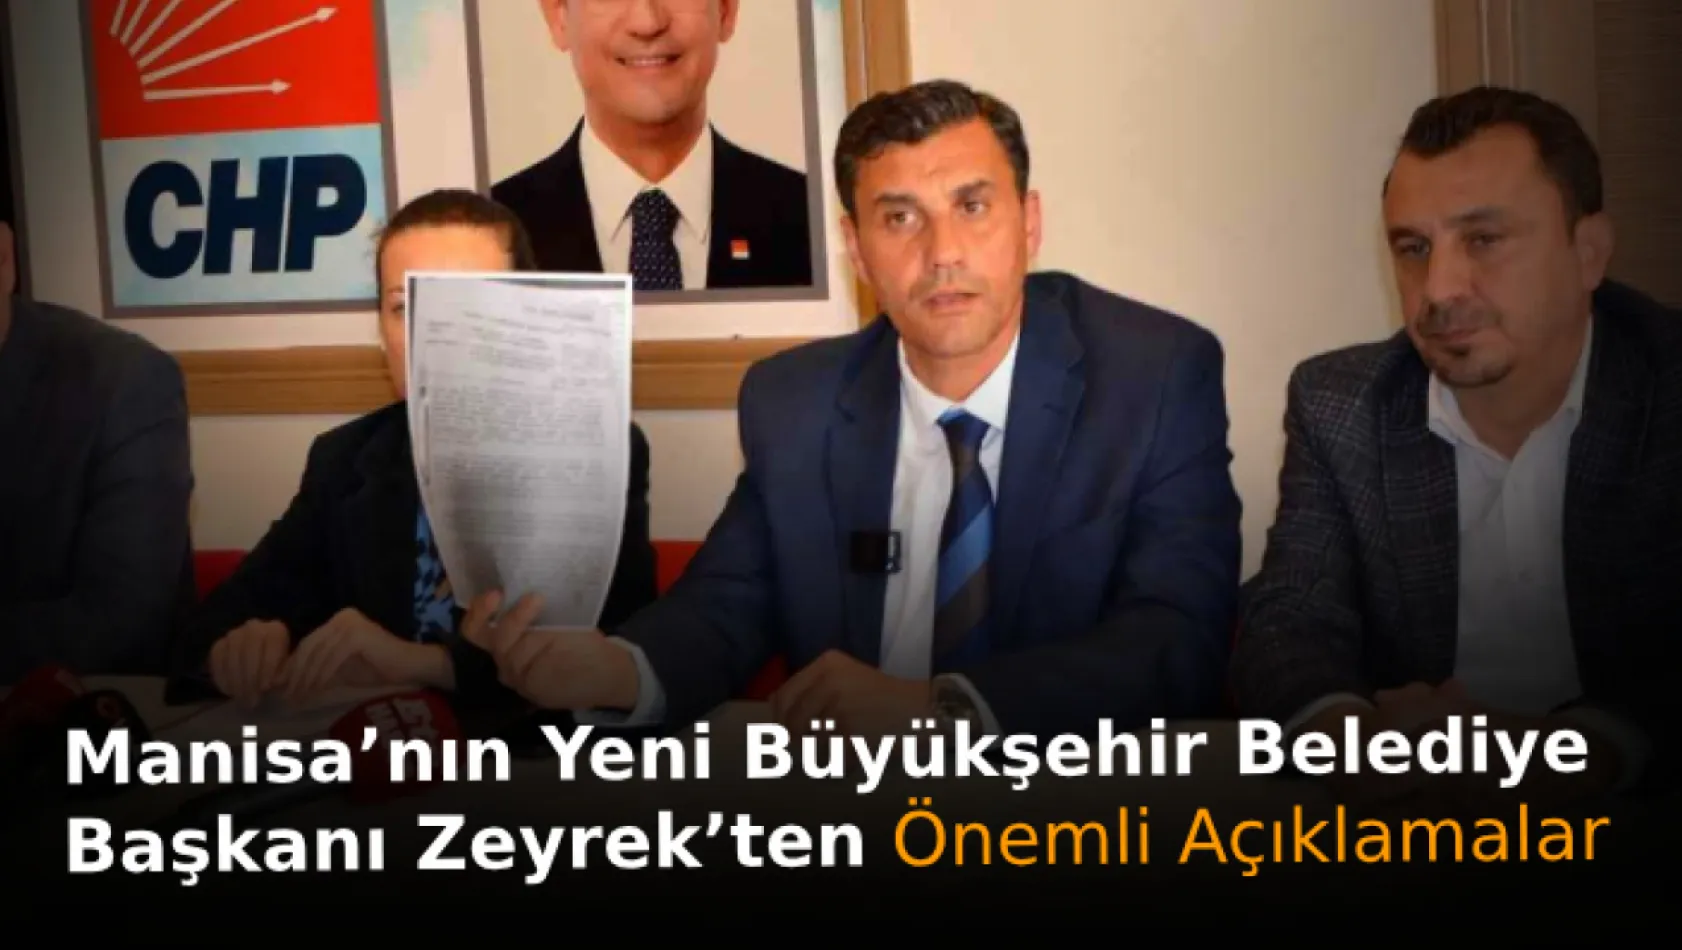 Manisa'nın yeni Büyükşehir Belediye Başkanı Zeyrek'ten önemli açıklamalar